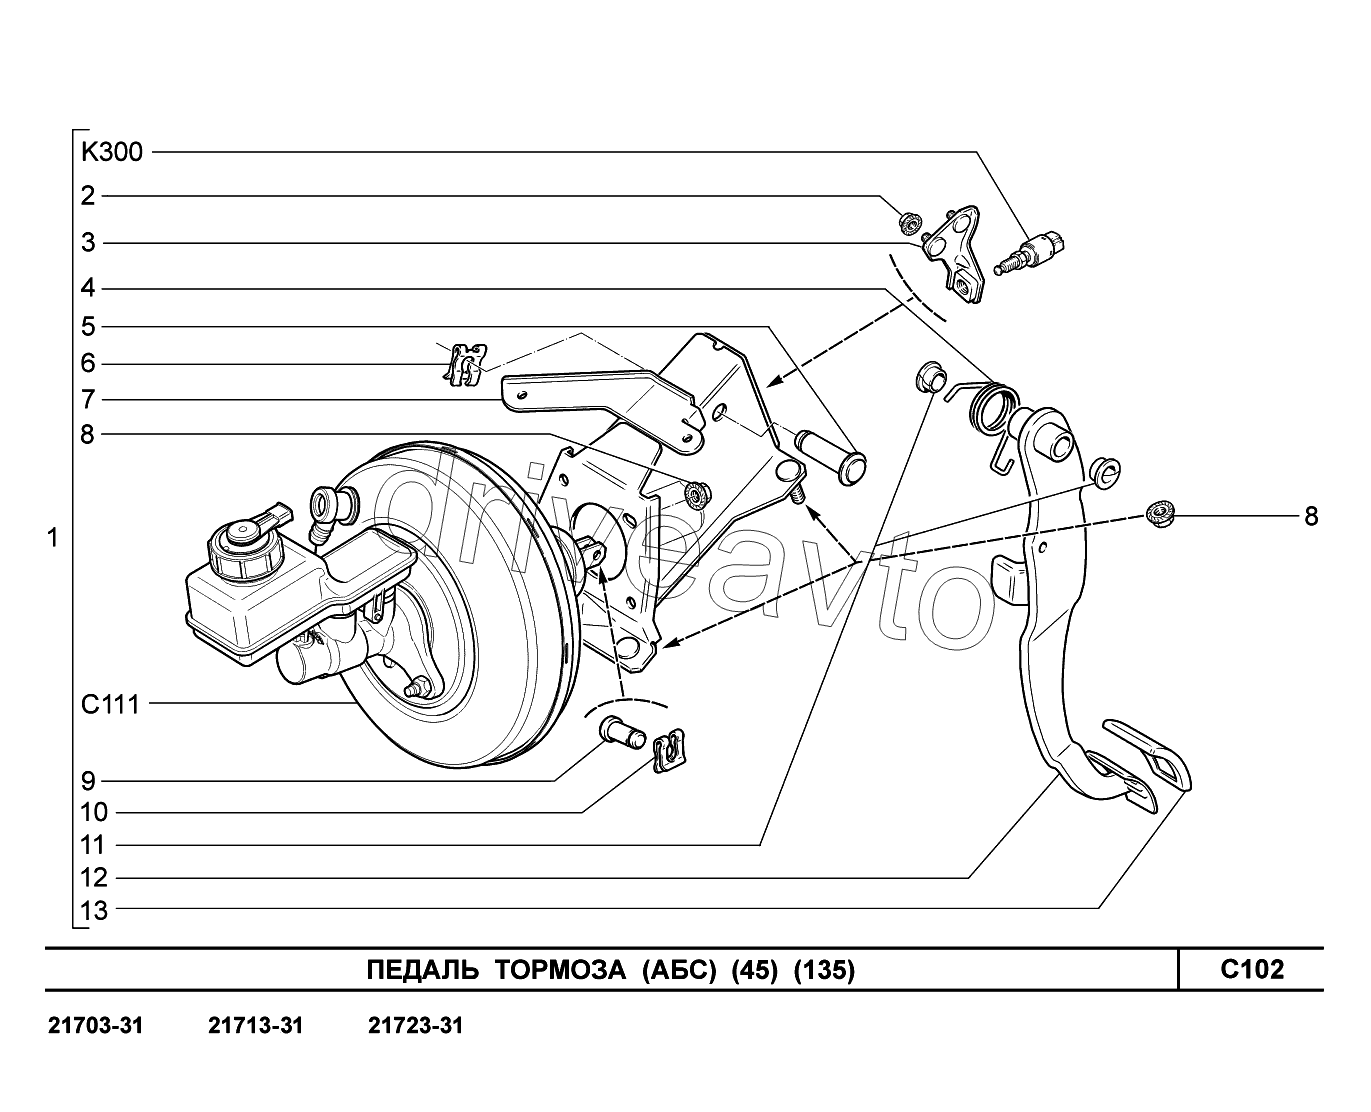 C102. Педаль тормоза